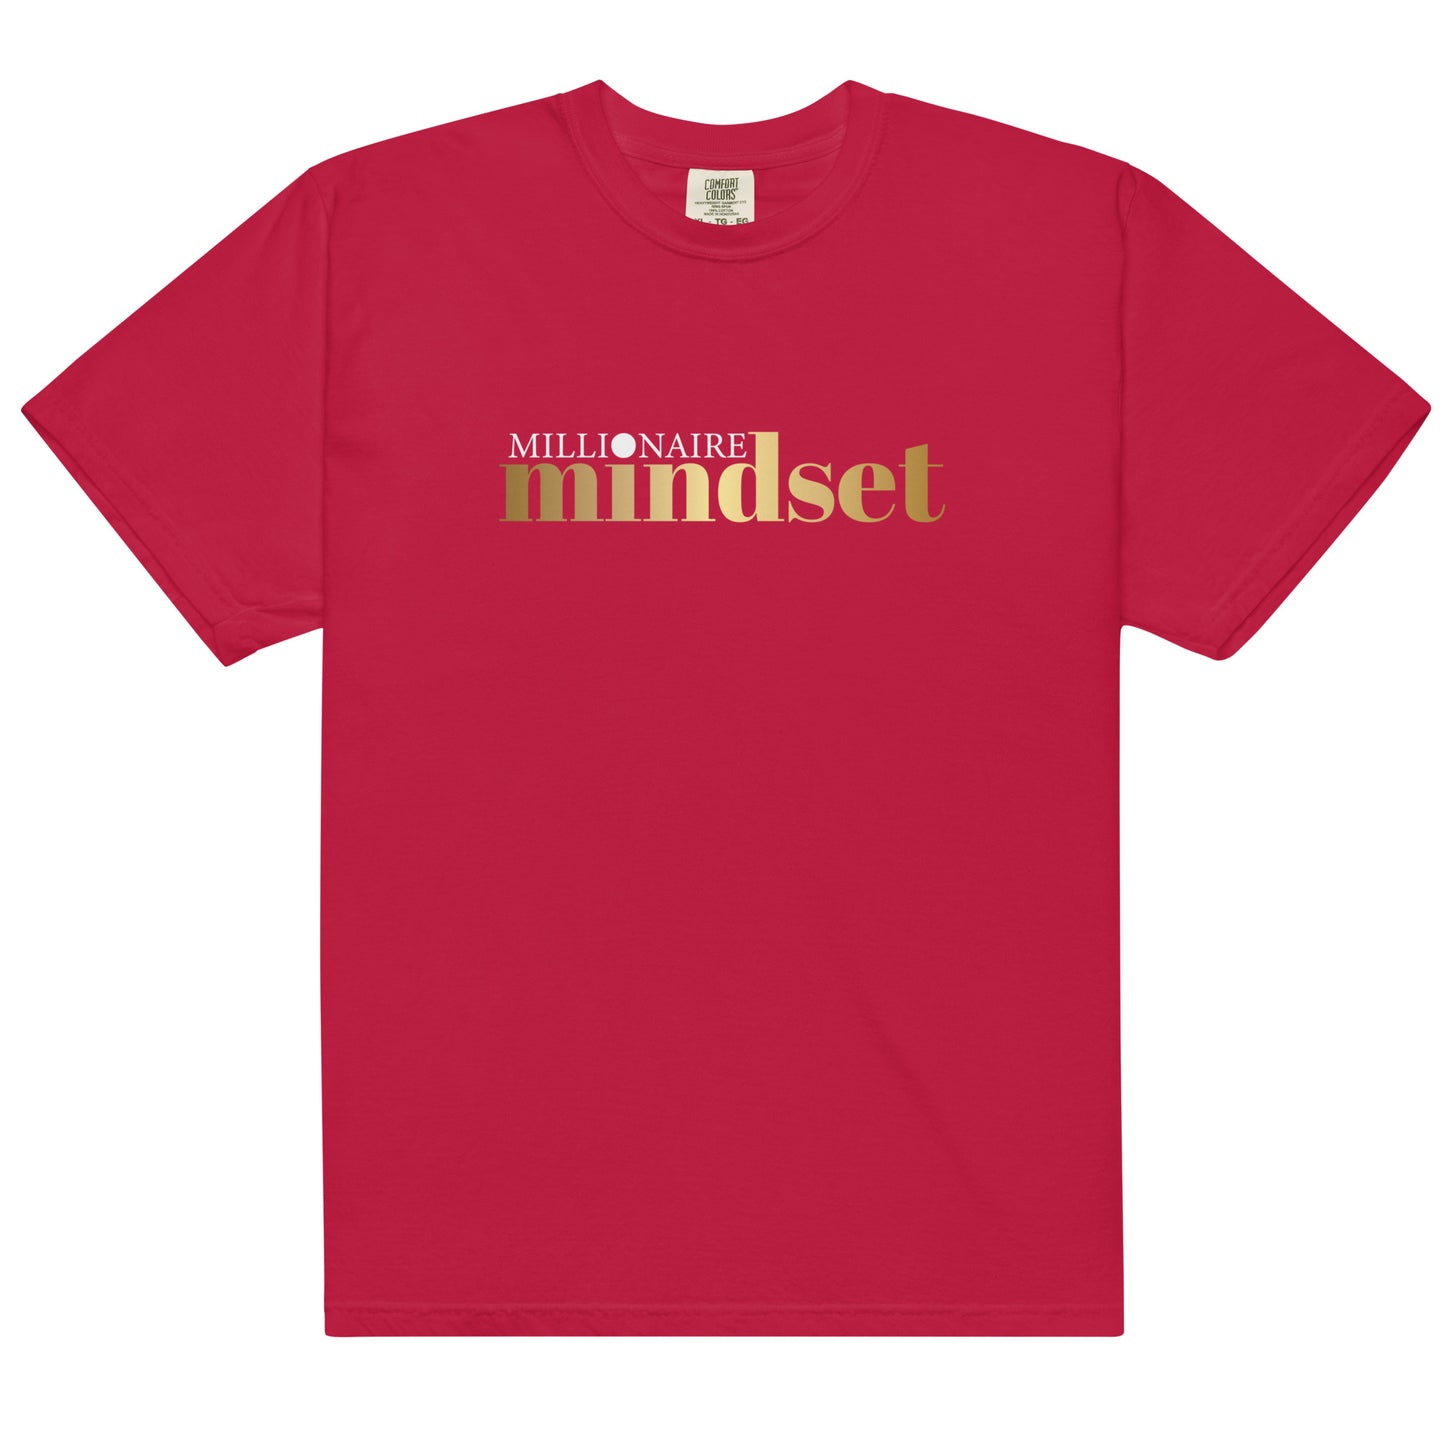 Diamond Mind "Millionaire Mindset" T-Shirt